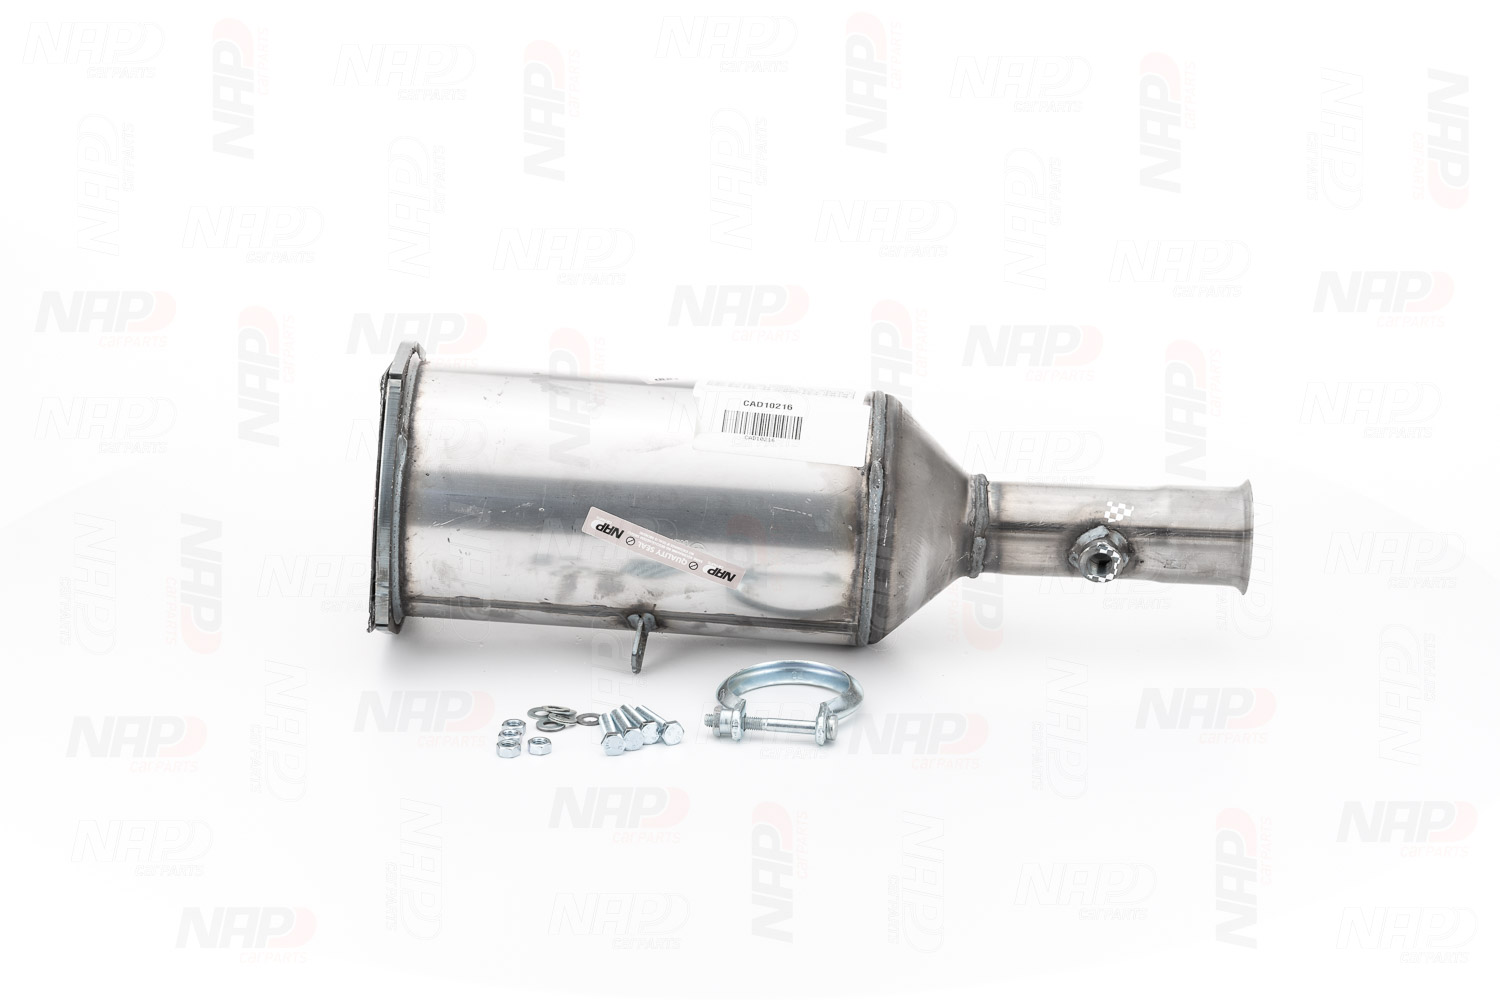 NAP carparts CAD10216 Peugeot 307 2014 Exhaust filter